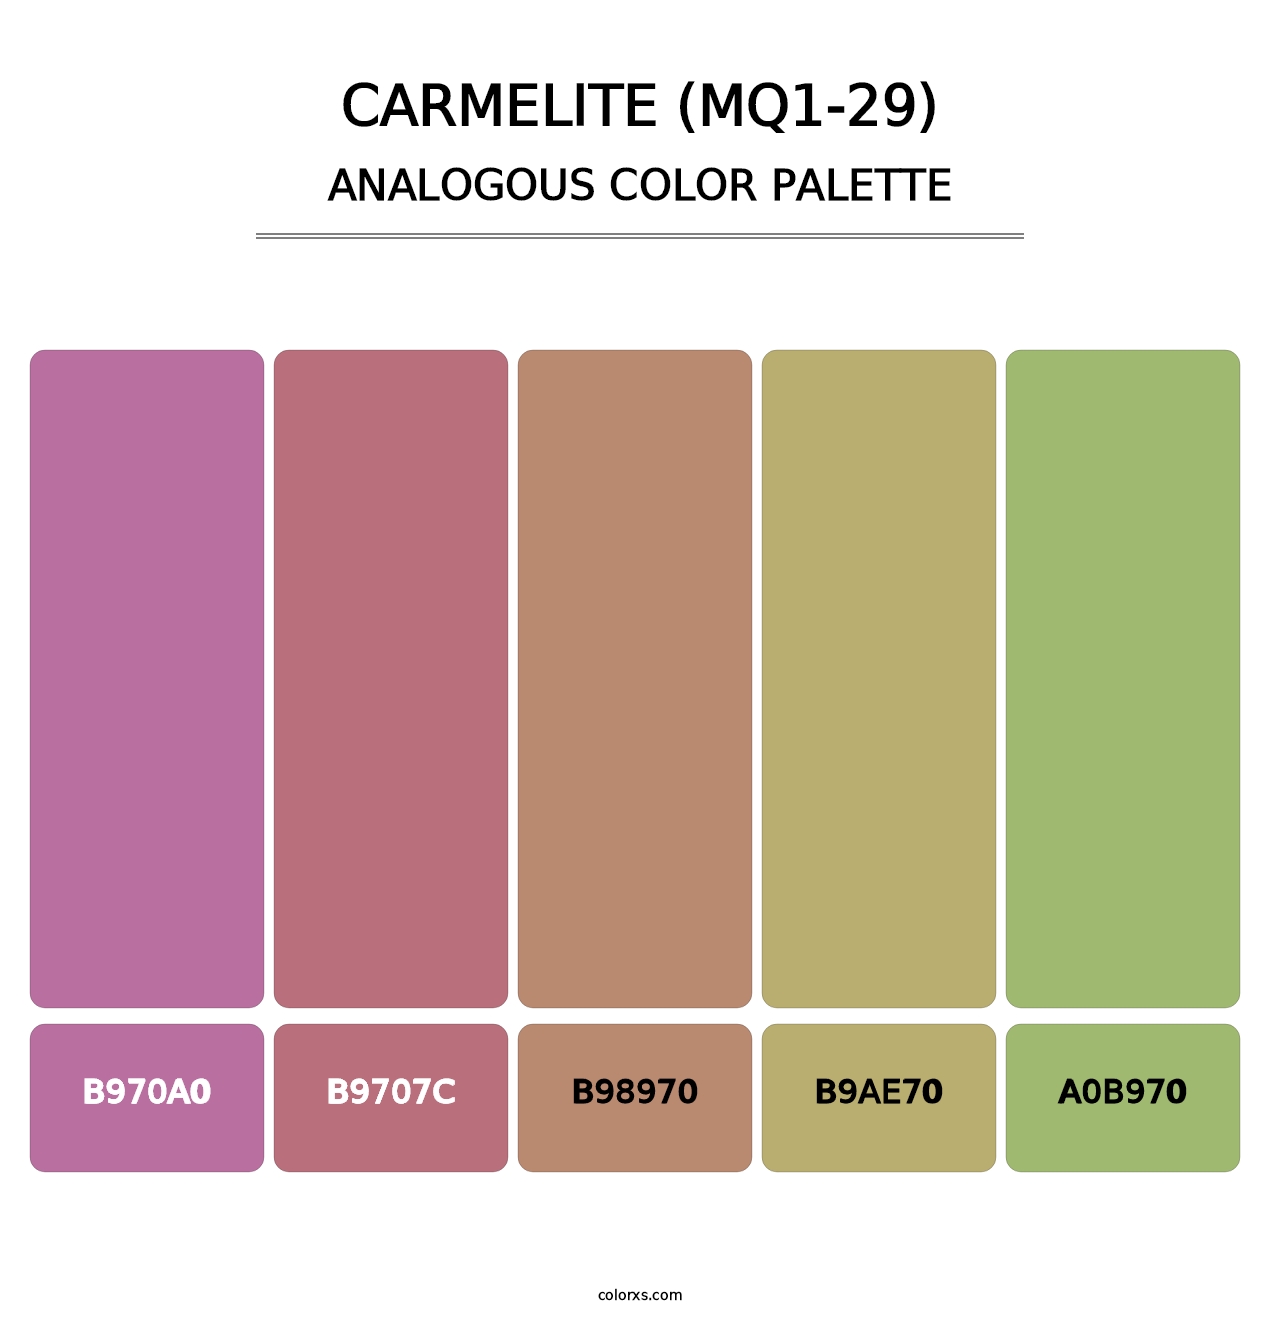 Carmelite (MQ1-29) - Analogous Color Palette